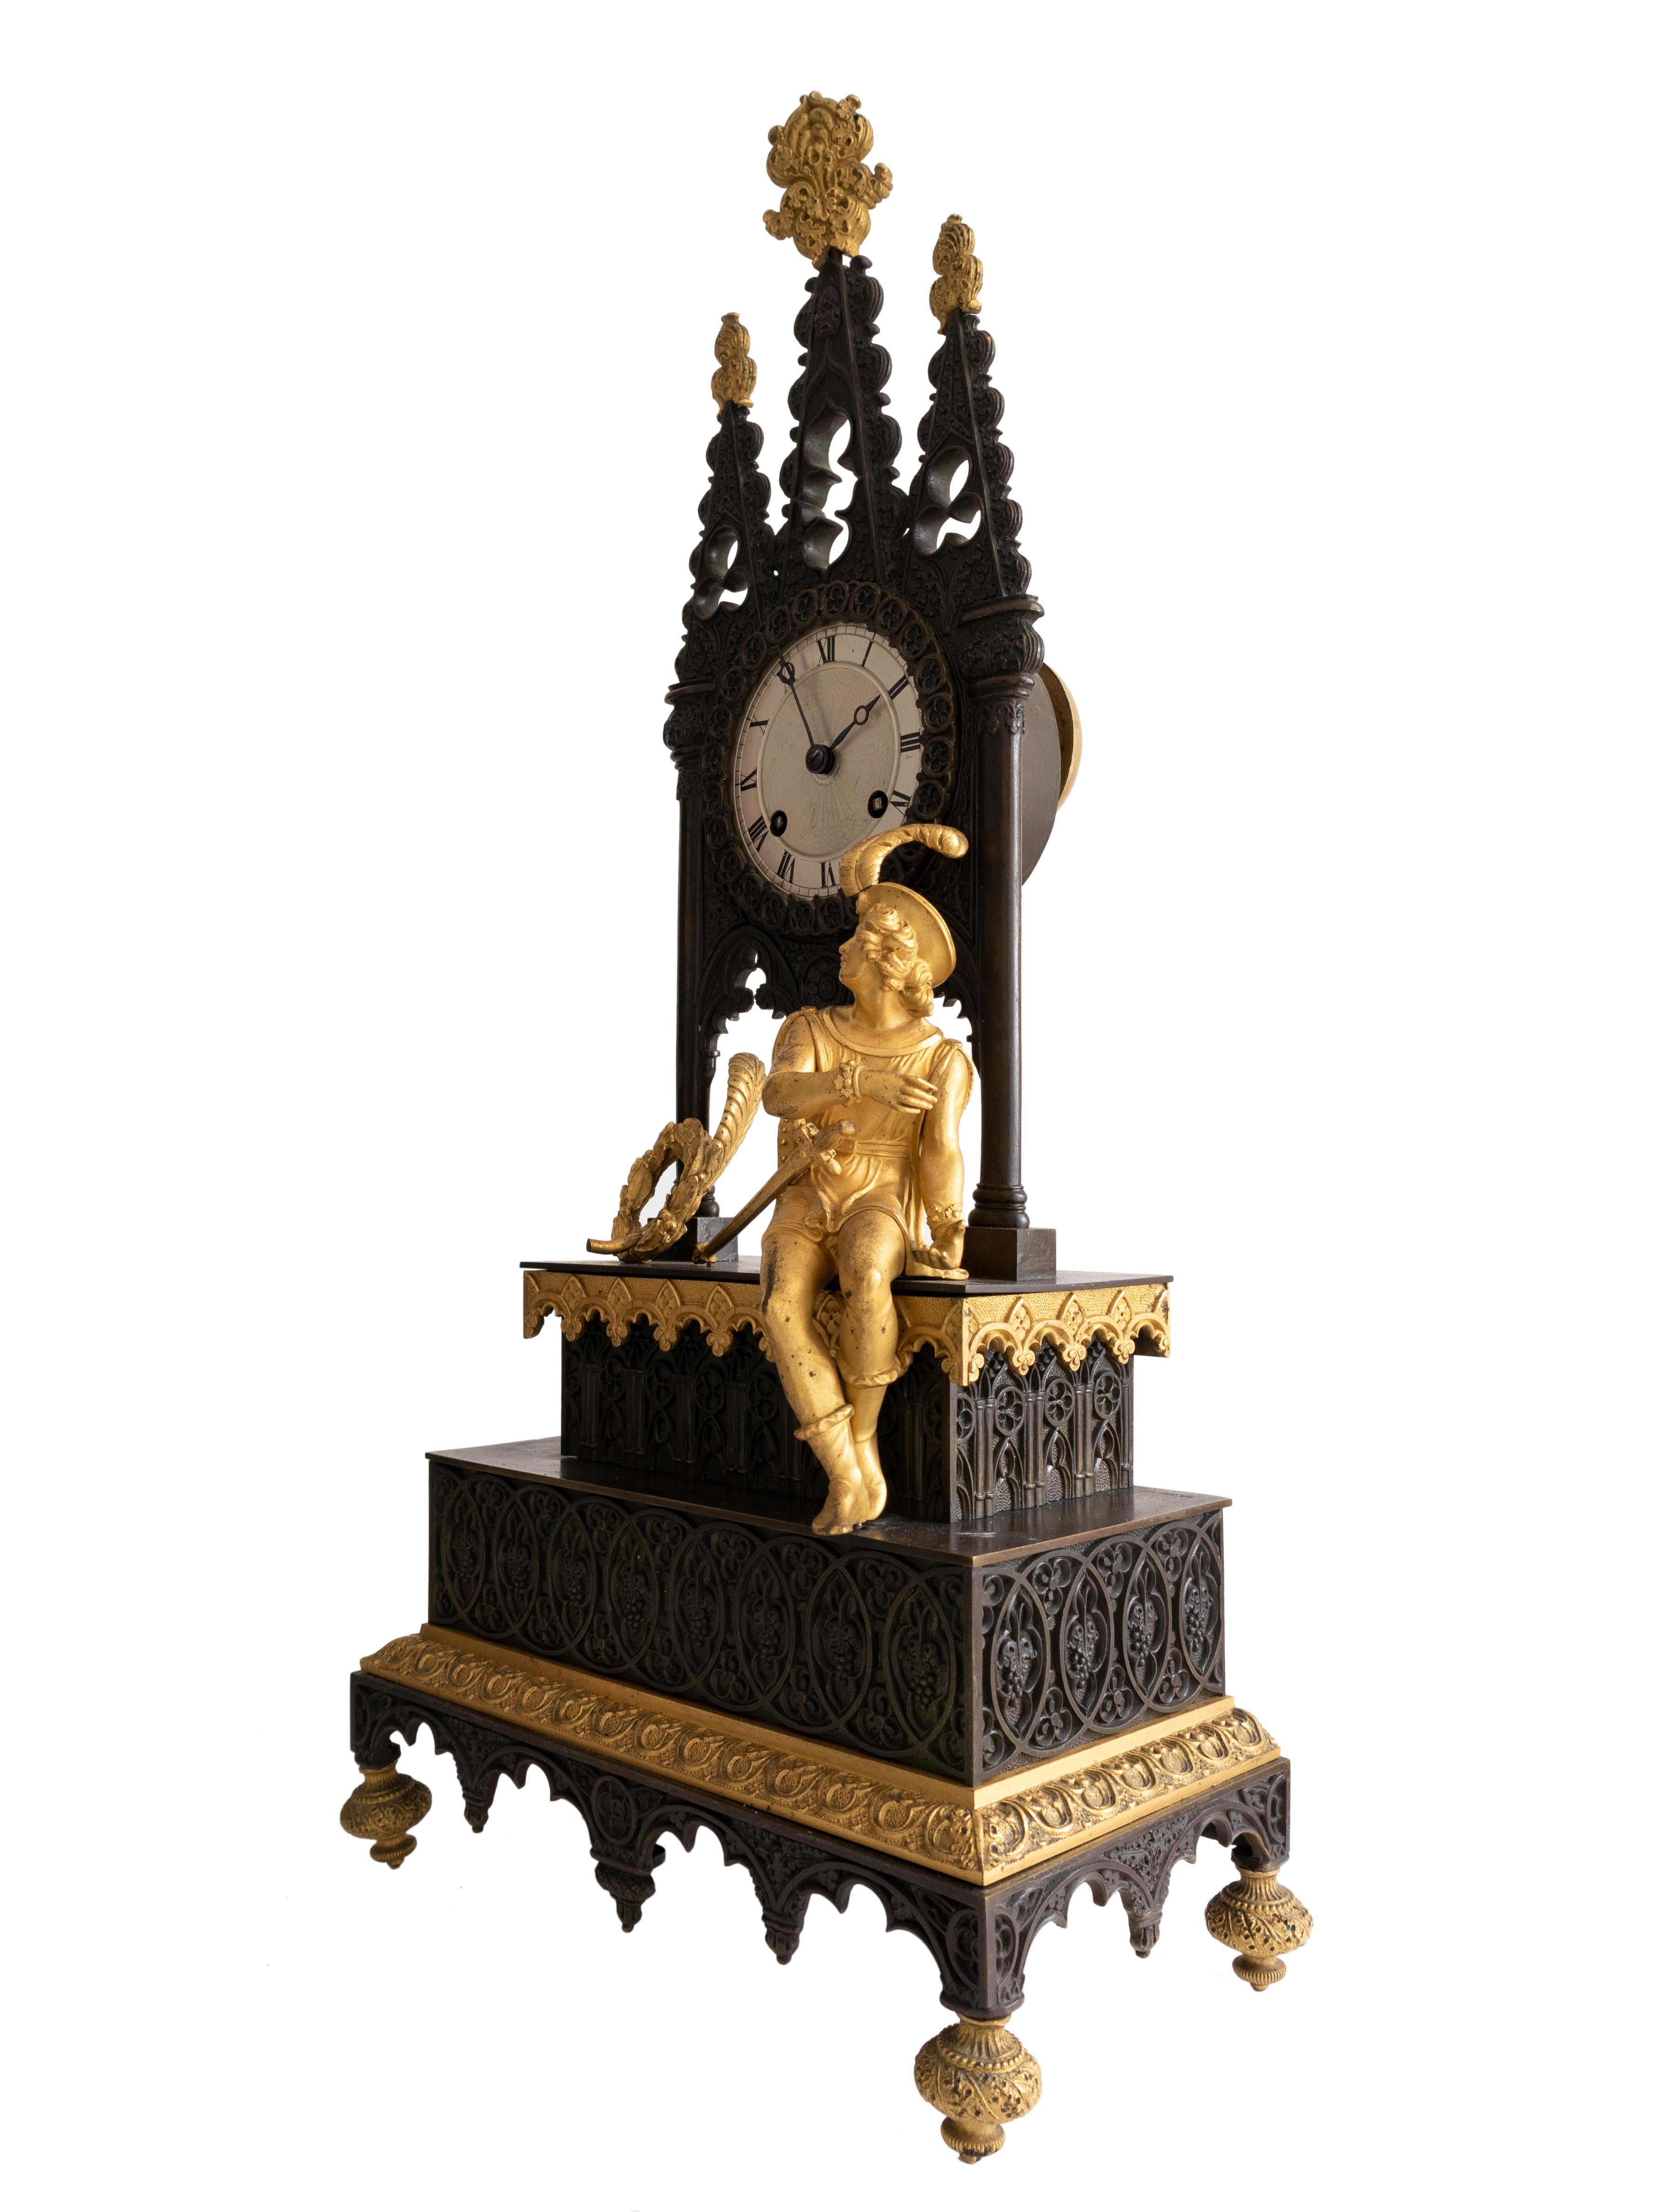 Horloge cathédrale de style gothique Biedermeier en bronze à balancier, à patine noire et laiton doré, décorée d'arcs gothiques et d'un joueur de harpe.
Cette pièce est entièrement sculptée, en bronze fortement doré, cadran en émail blanc avec